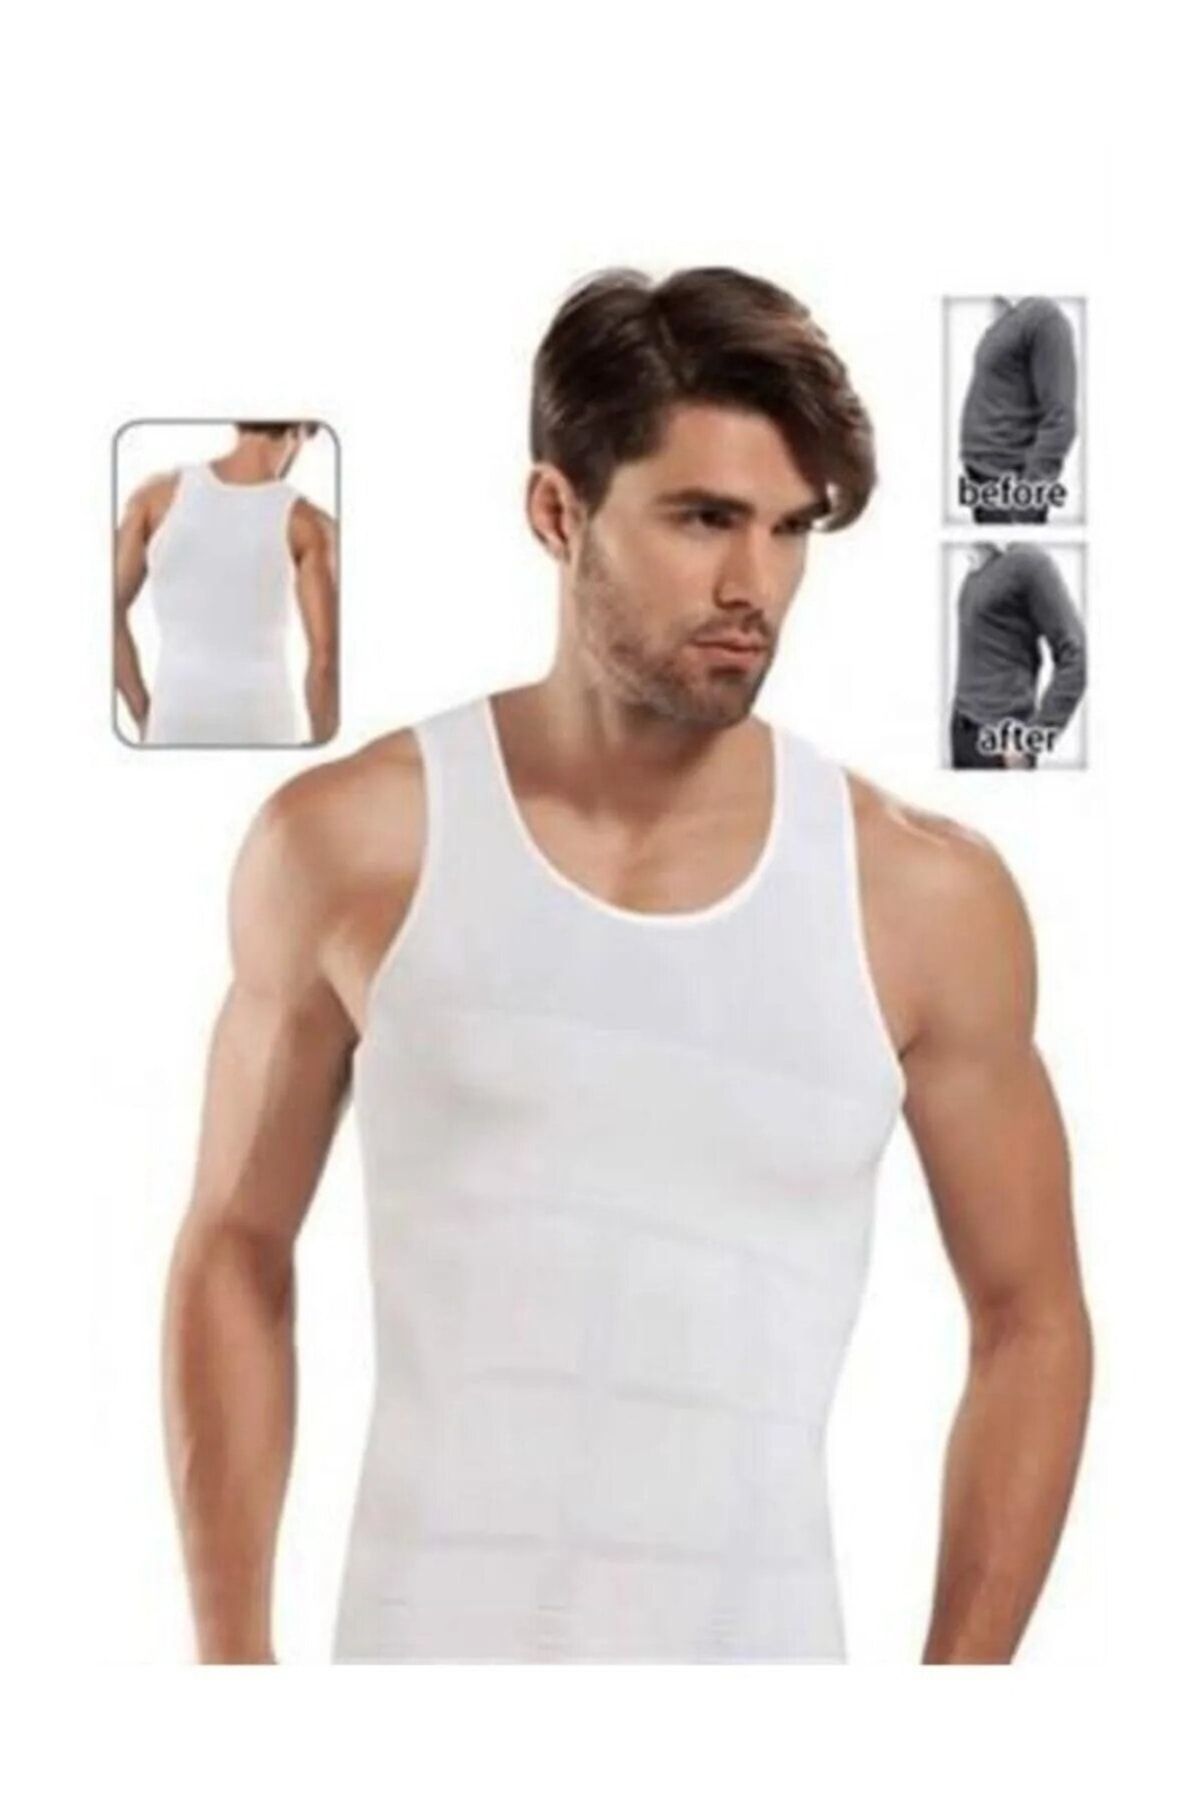 Sh Mağazacılık Premium Erkek Korse Bel Göğüs Göbek 2 Beden Incelten Toparlayıcı Sıkılaştırıcı Beyaz Atlet